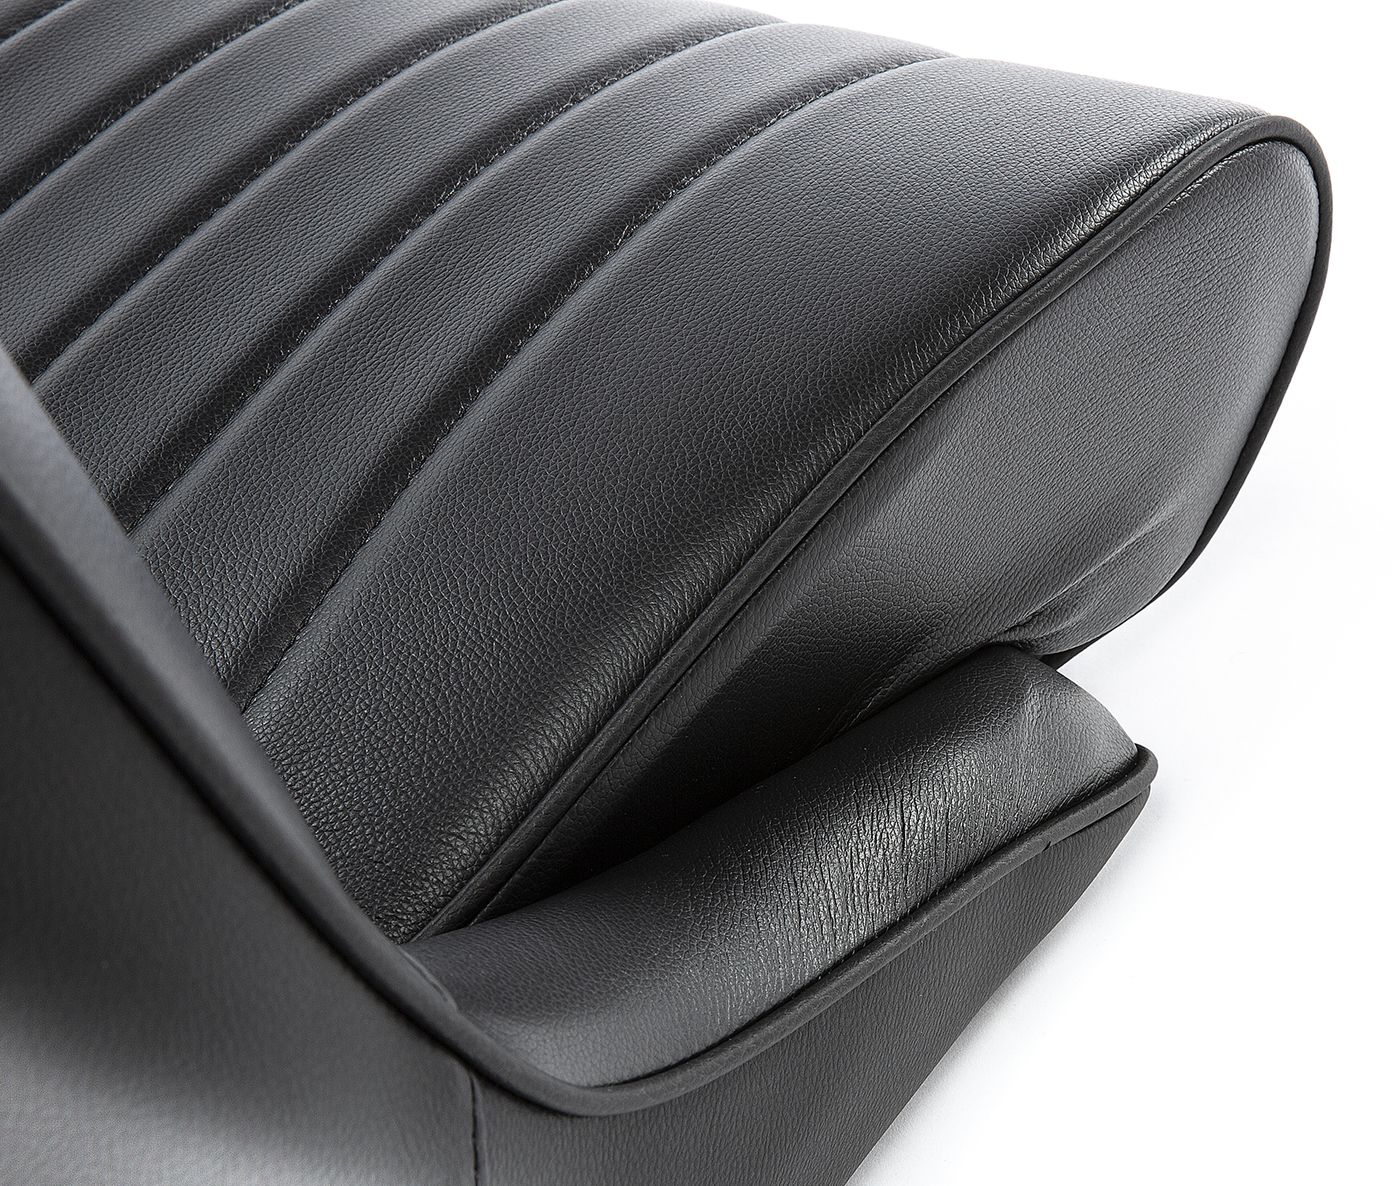 Ledersitz
Leather seat
Siège en cuir
Asiento de cuero
Banco em 